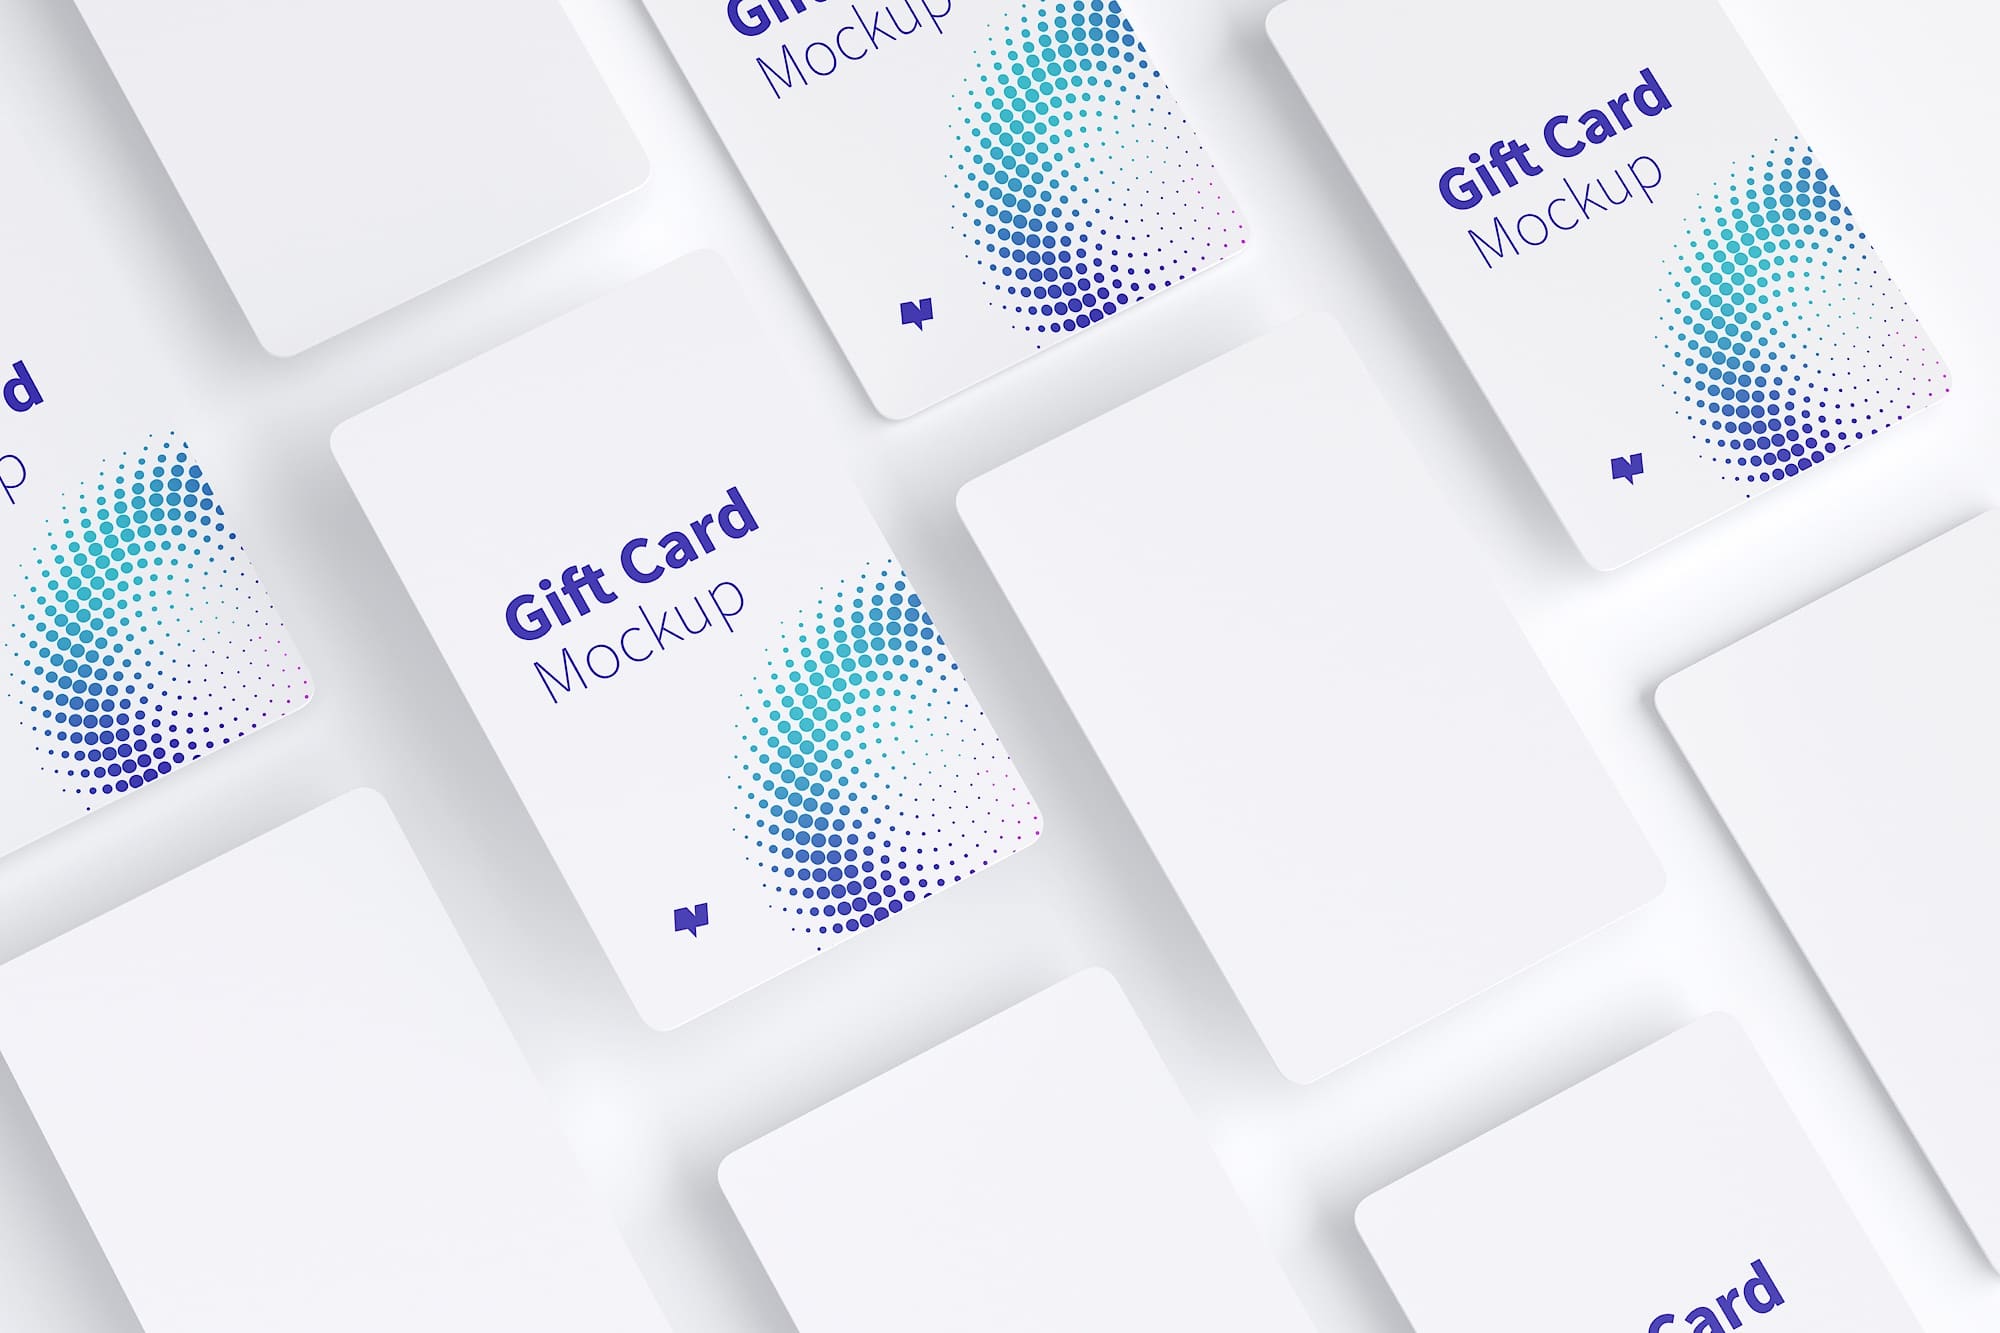 礼品积分卡卡片设计效果图等距样机模板09 Gift Card Mockup 09插图